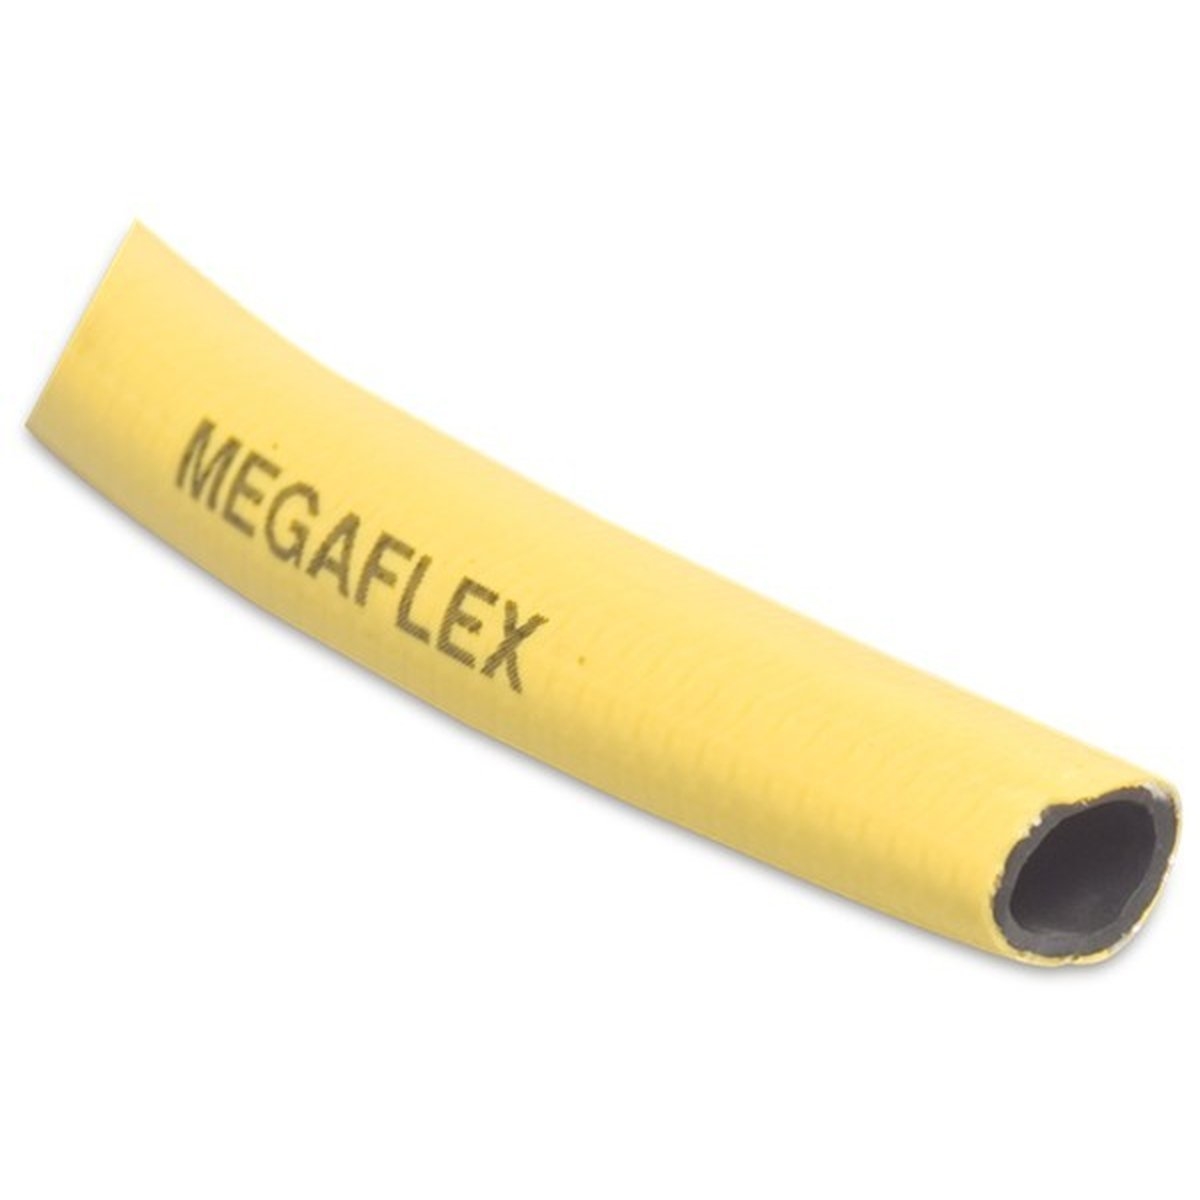 Megaflexslang 12,5mm 50meter geel